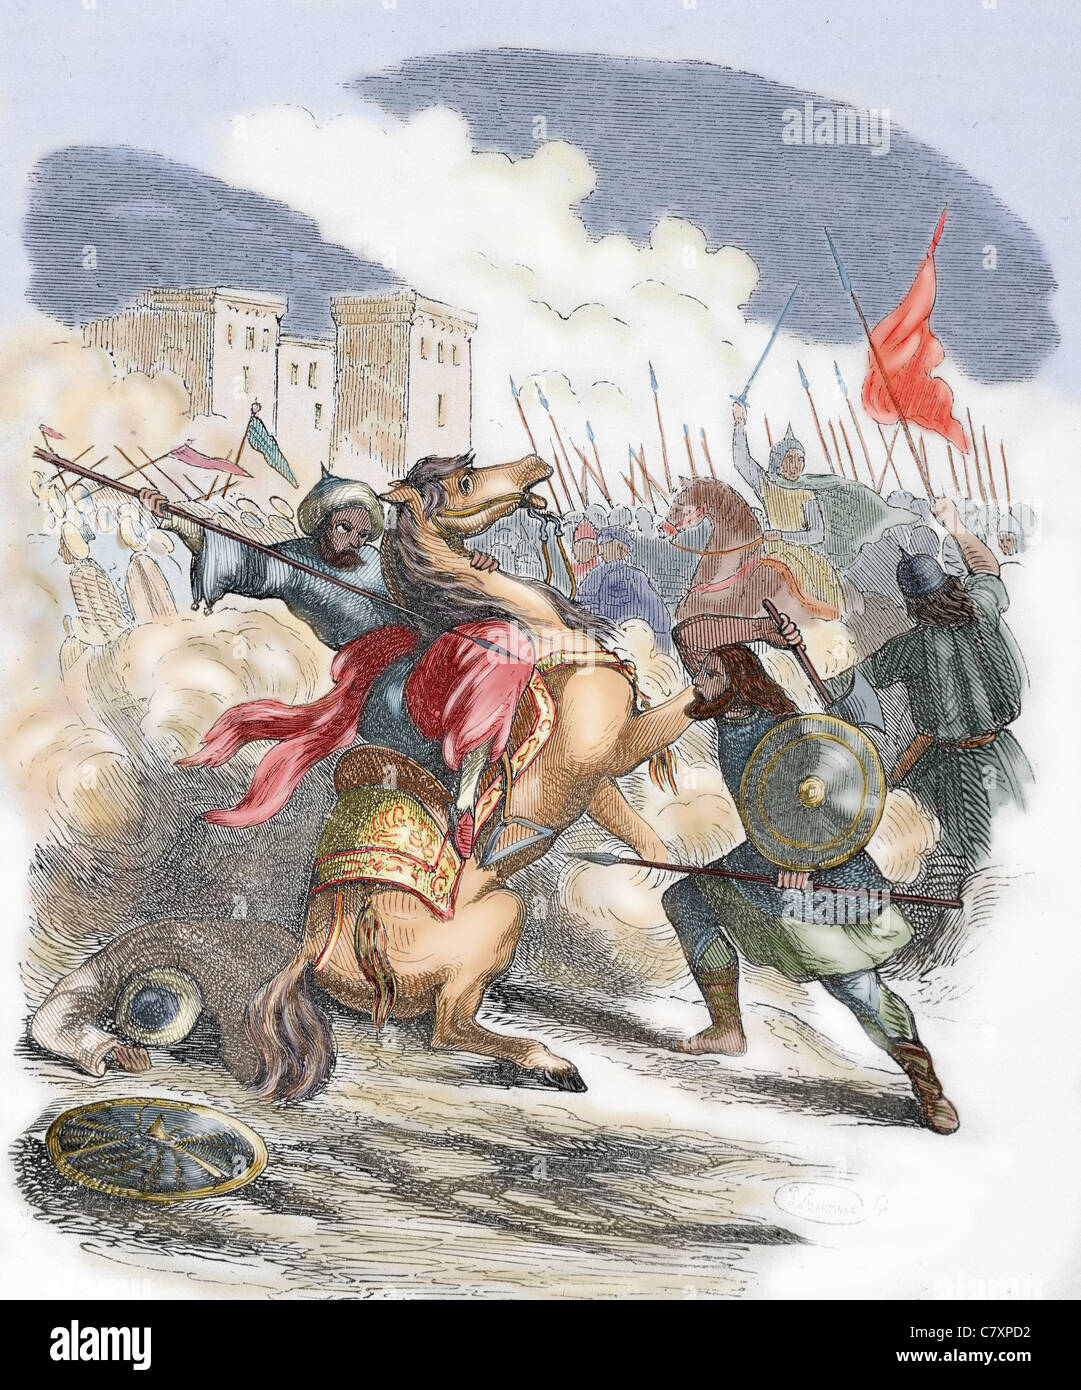 Sancho VII der starke (1154-1234). König von Navarra (1194-1234). Schlacht. Farbige Gravur. Stockfoto